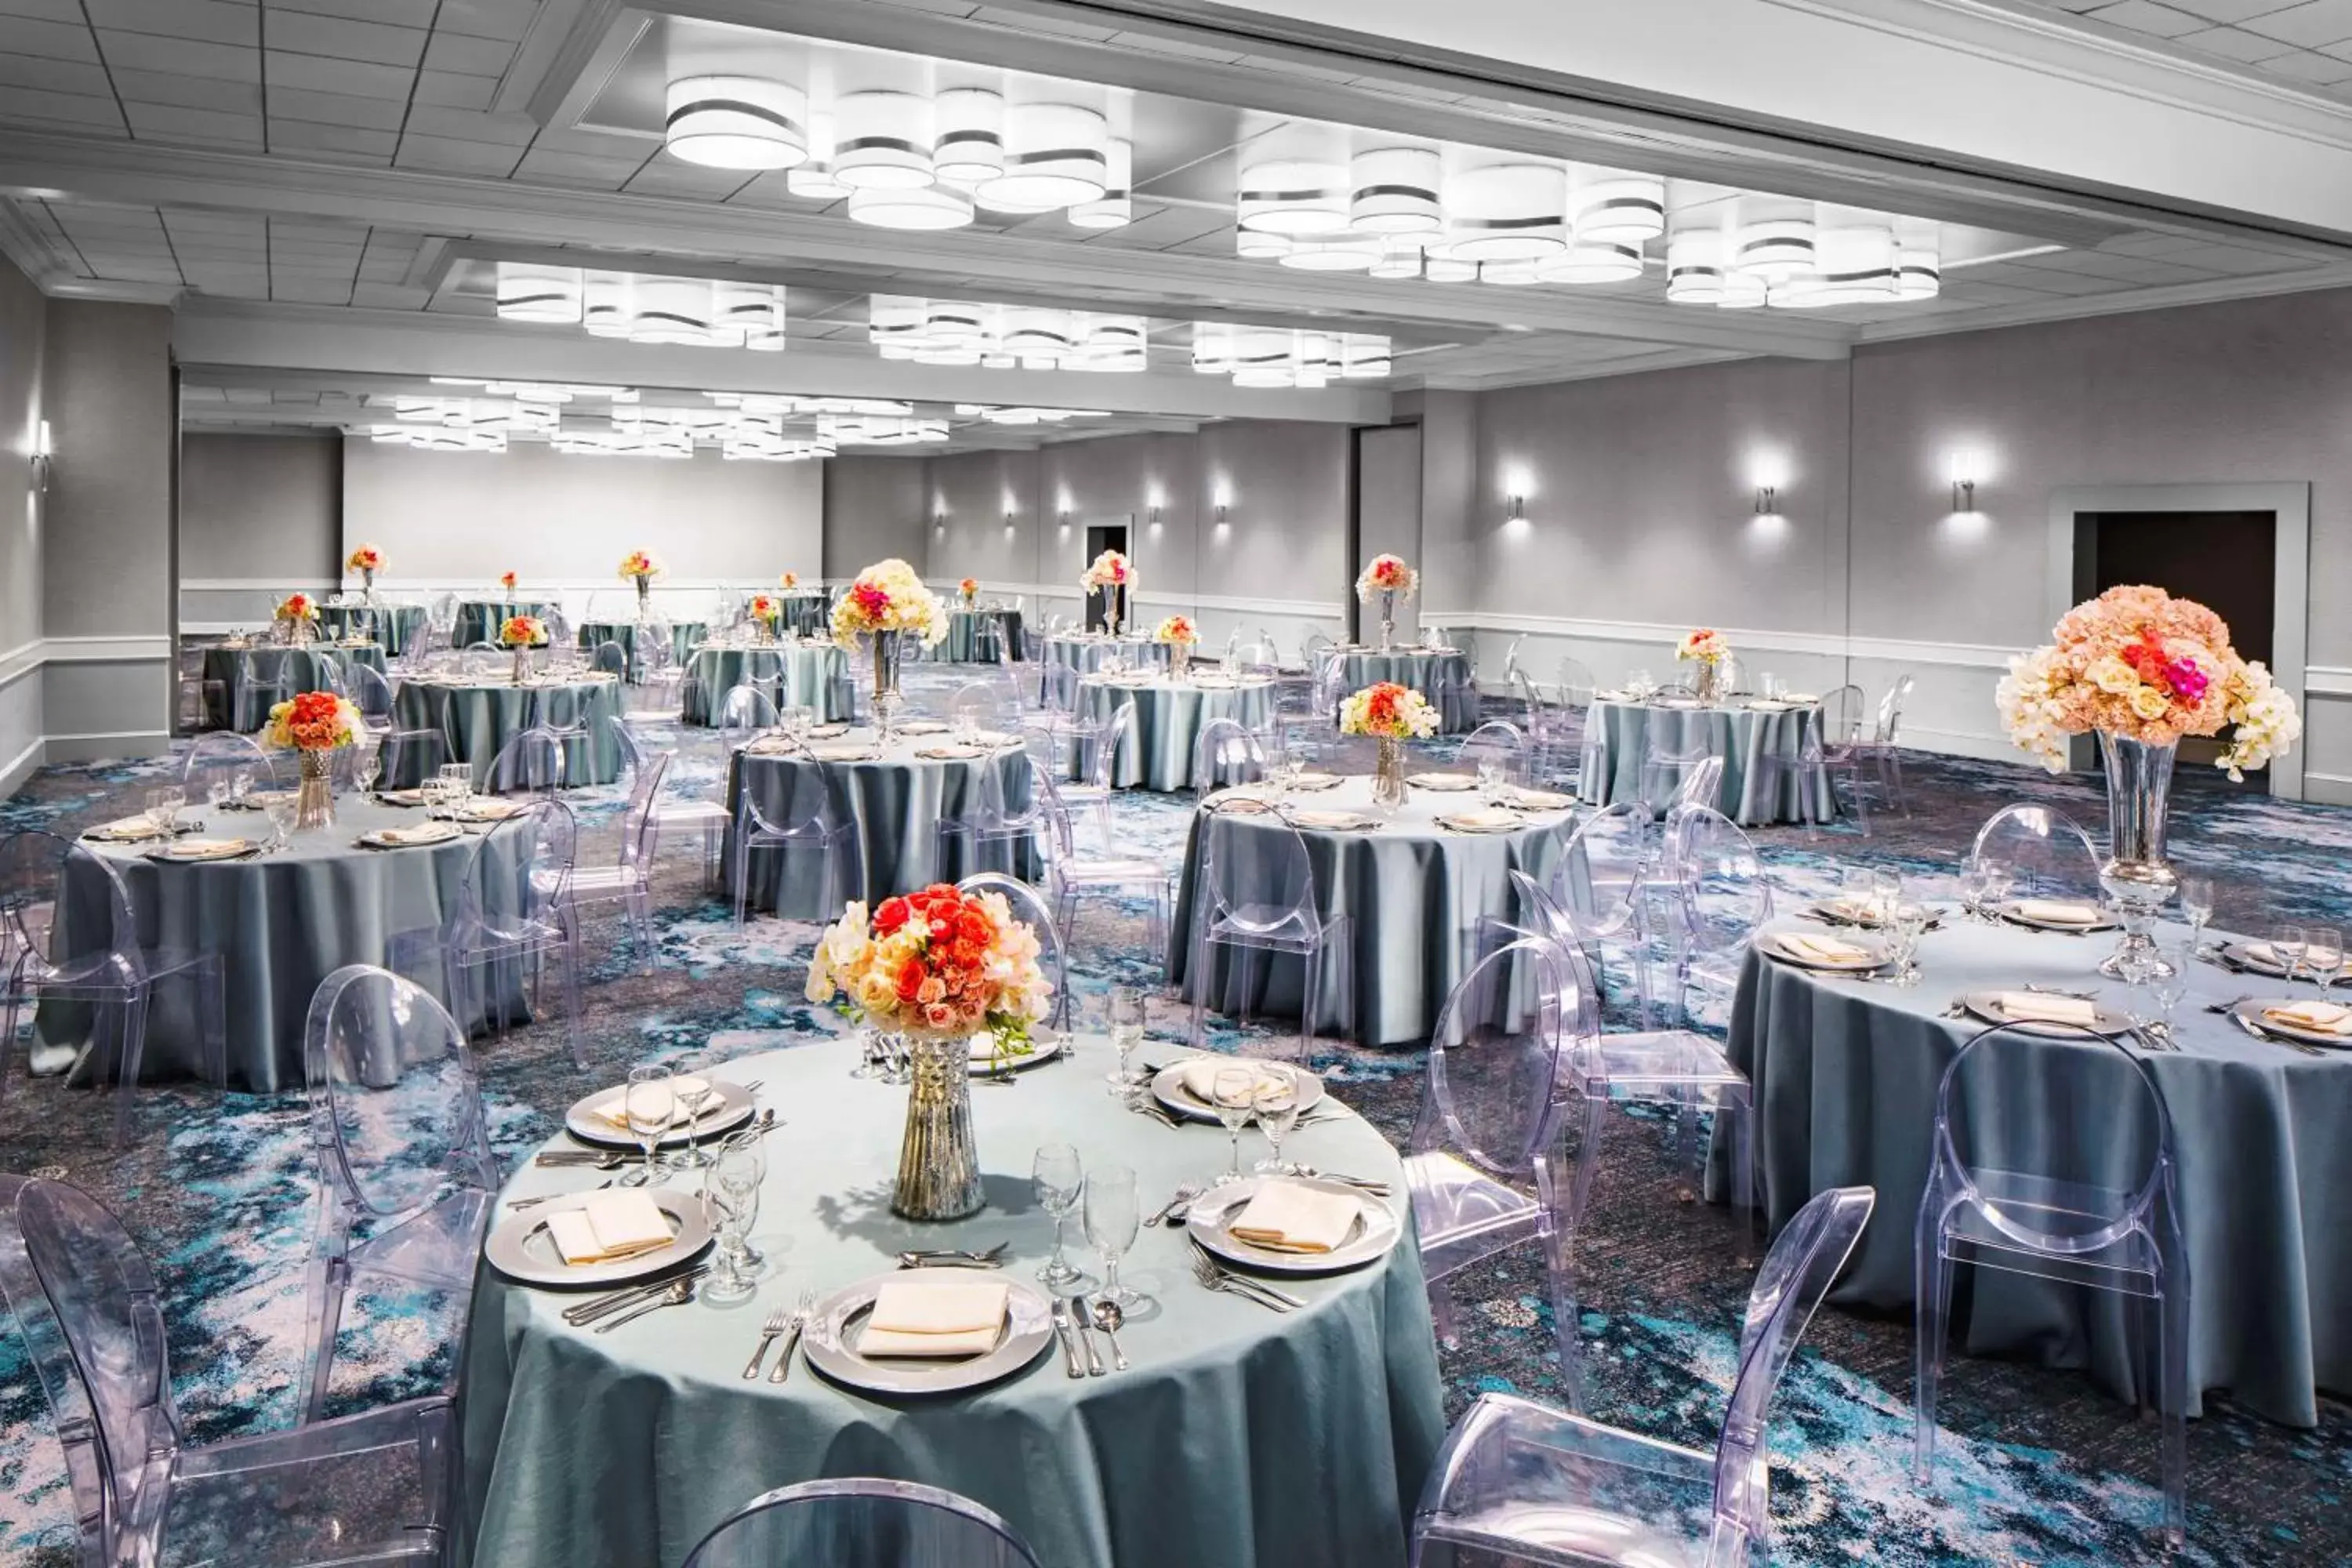 Lobby or reception, Banquet Facilities in Hyatt Regency Newport Beach